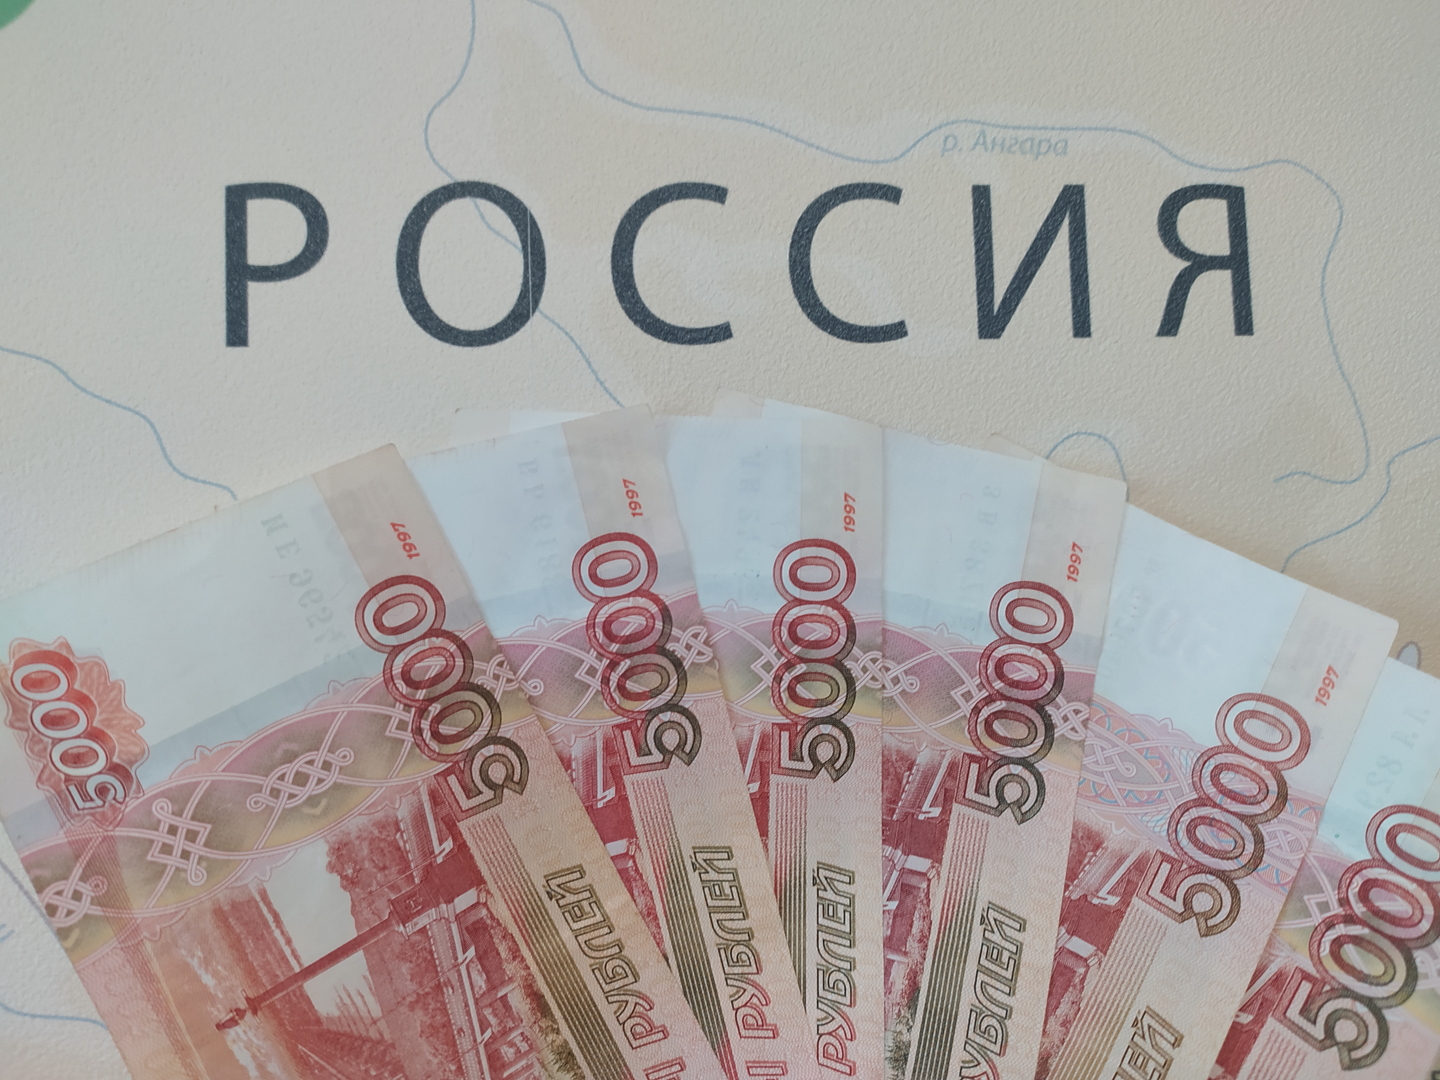 مسؤول روسي يحدد سعر صرف الروبل المفيد للاقتصاد الروسي